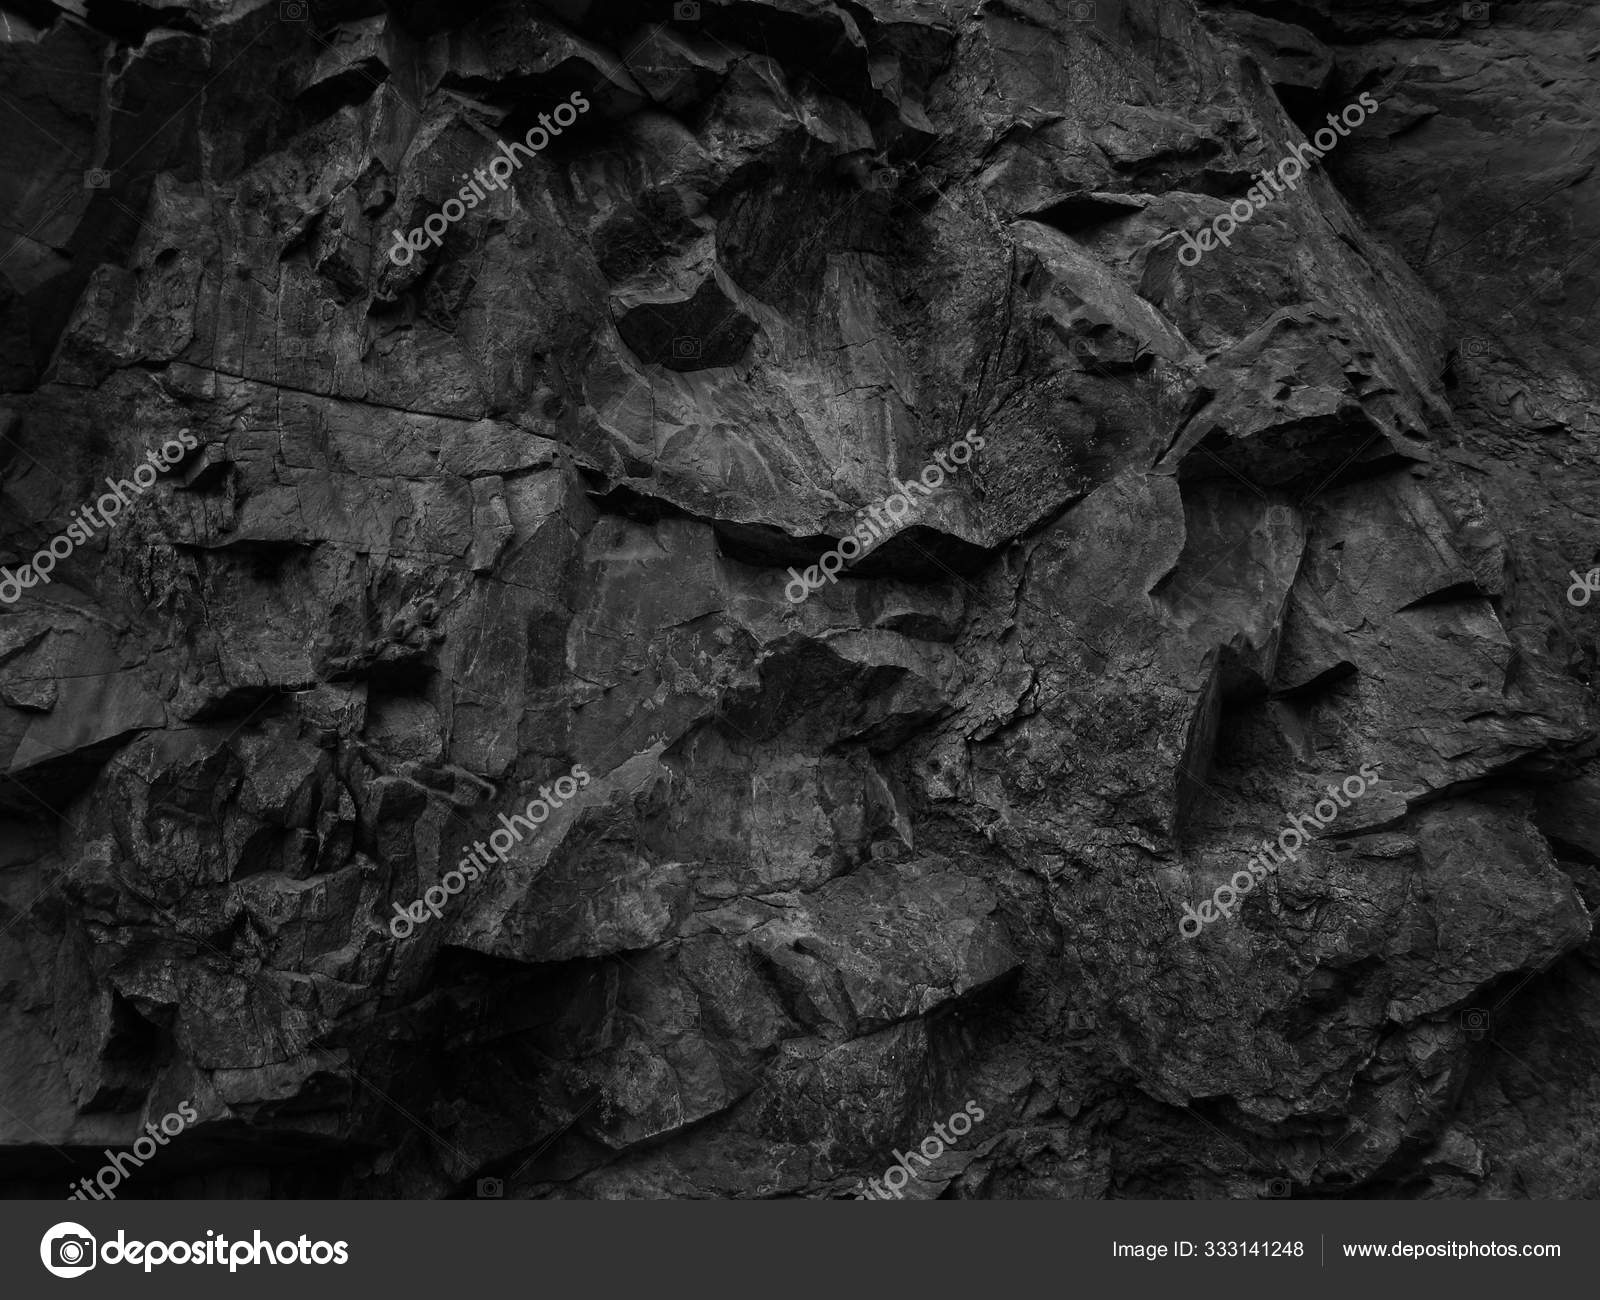 Product Photography Backdrop Dark Grunge Stone